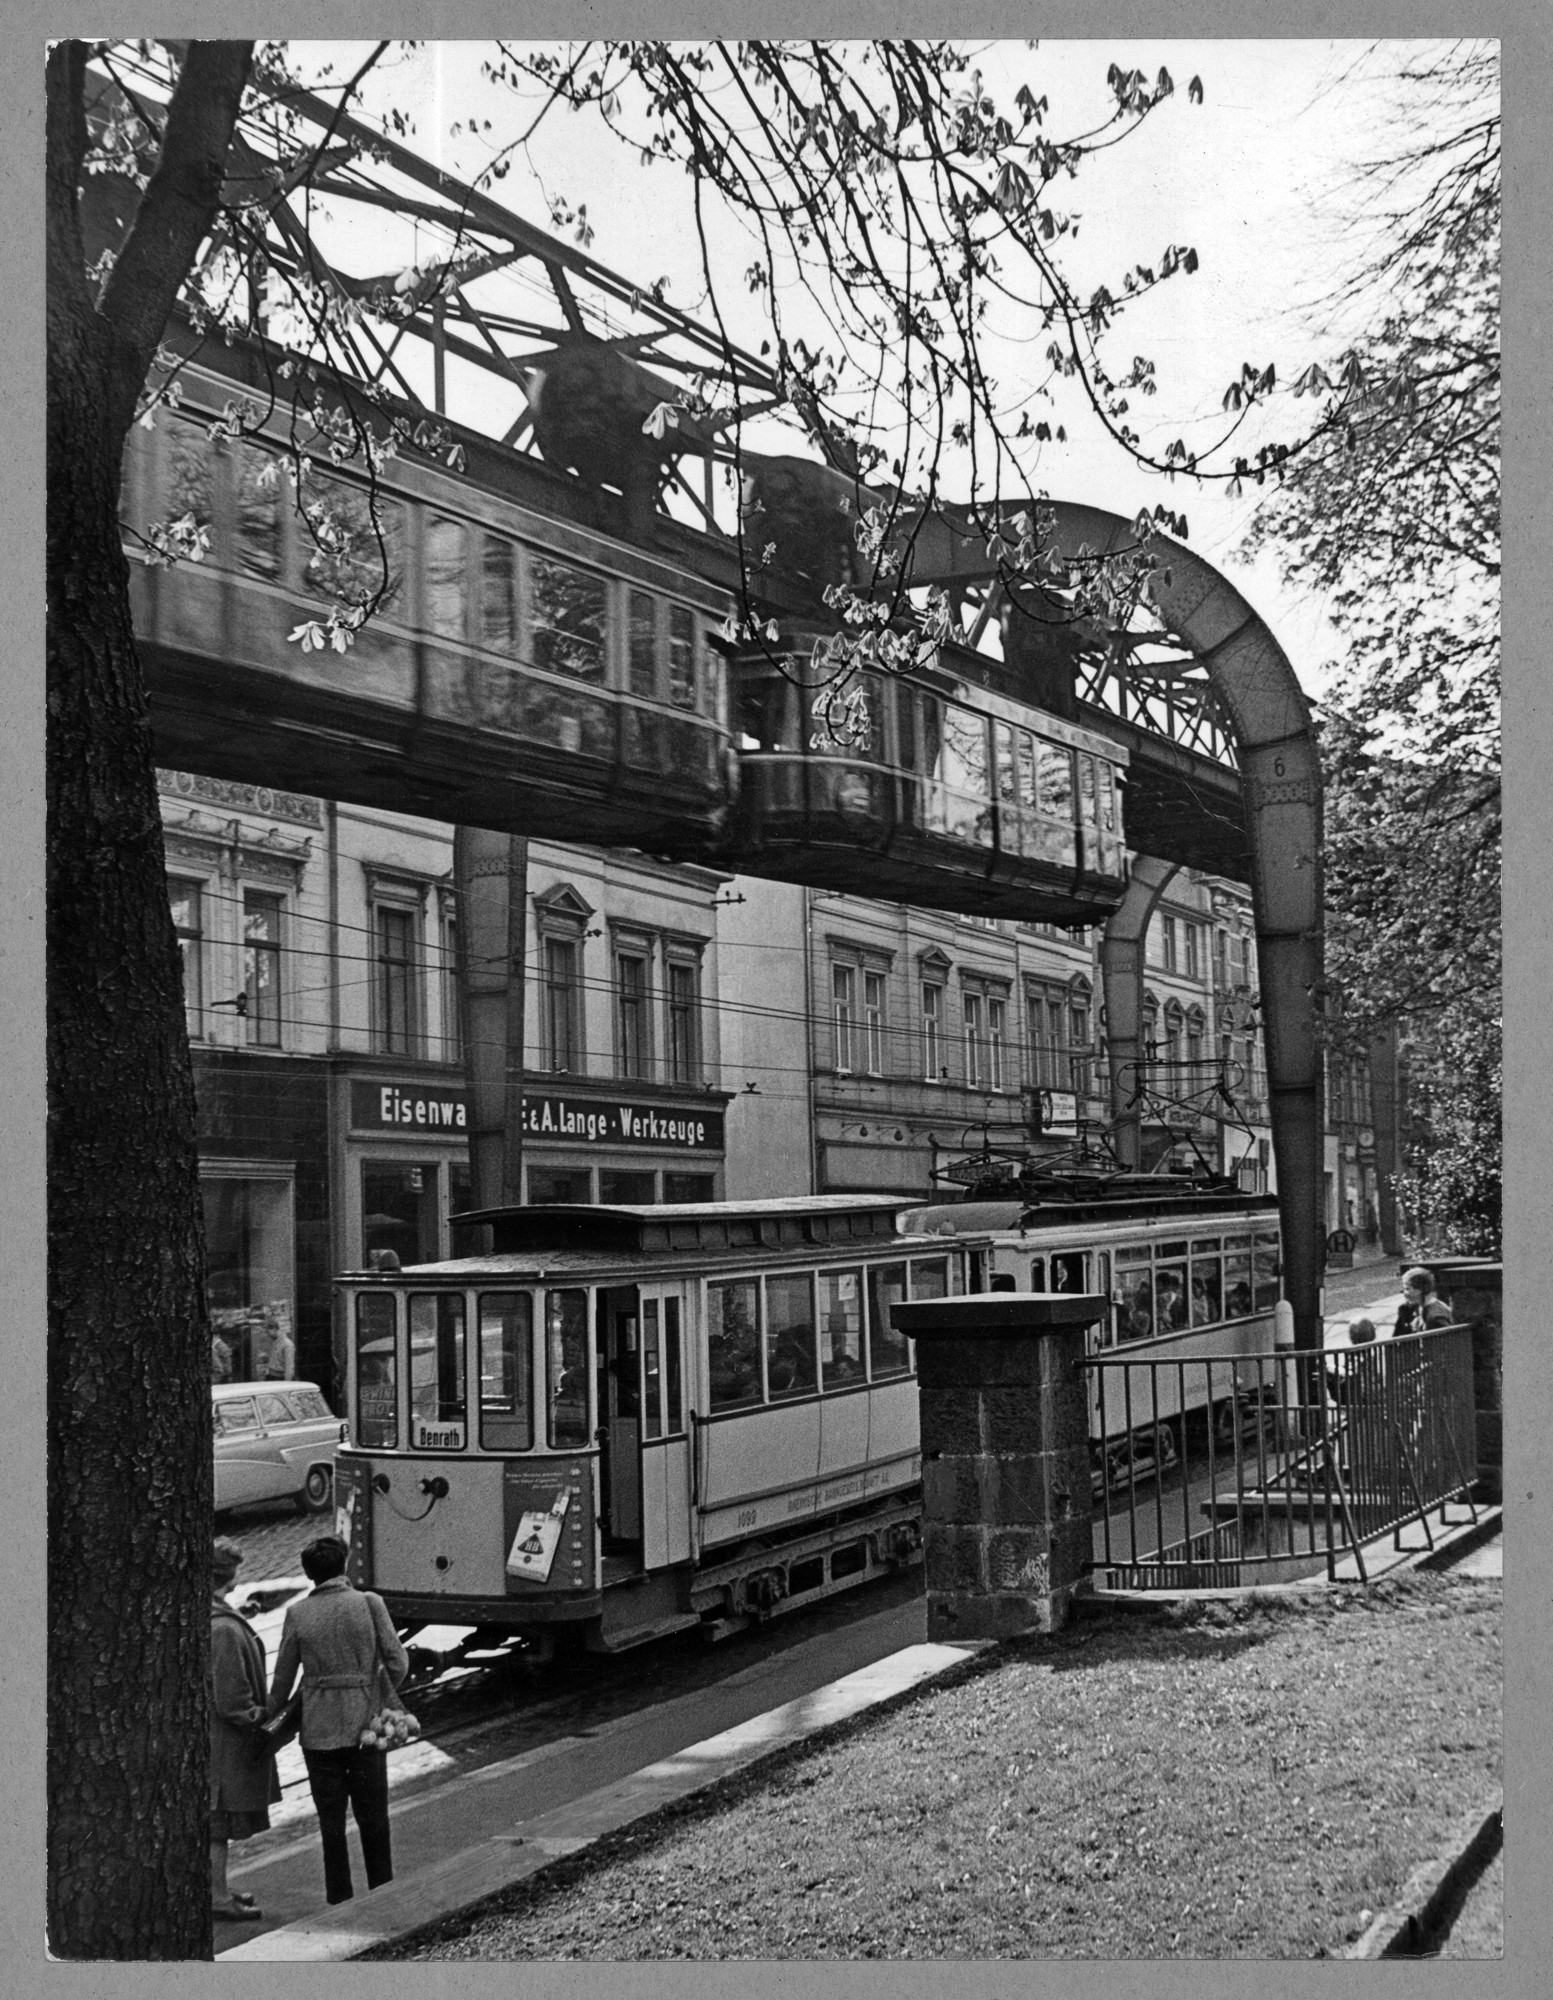 Straßenbahn unter der Schwebebahn in Vohwinkel ((C) Sammlung Bergischer Geschichtsverein e.V. CC BY-NC)